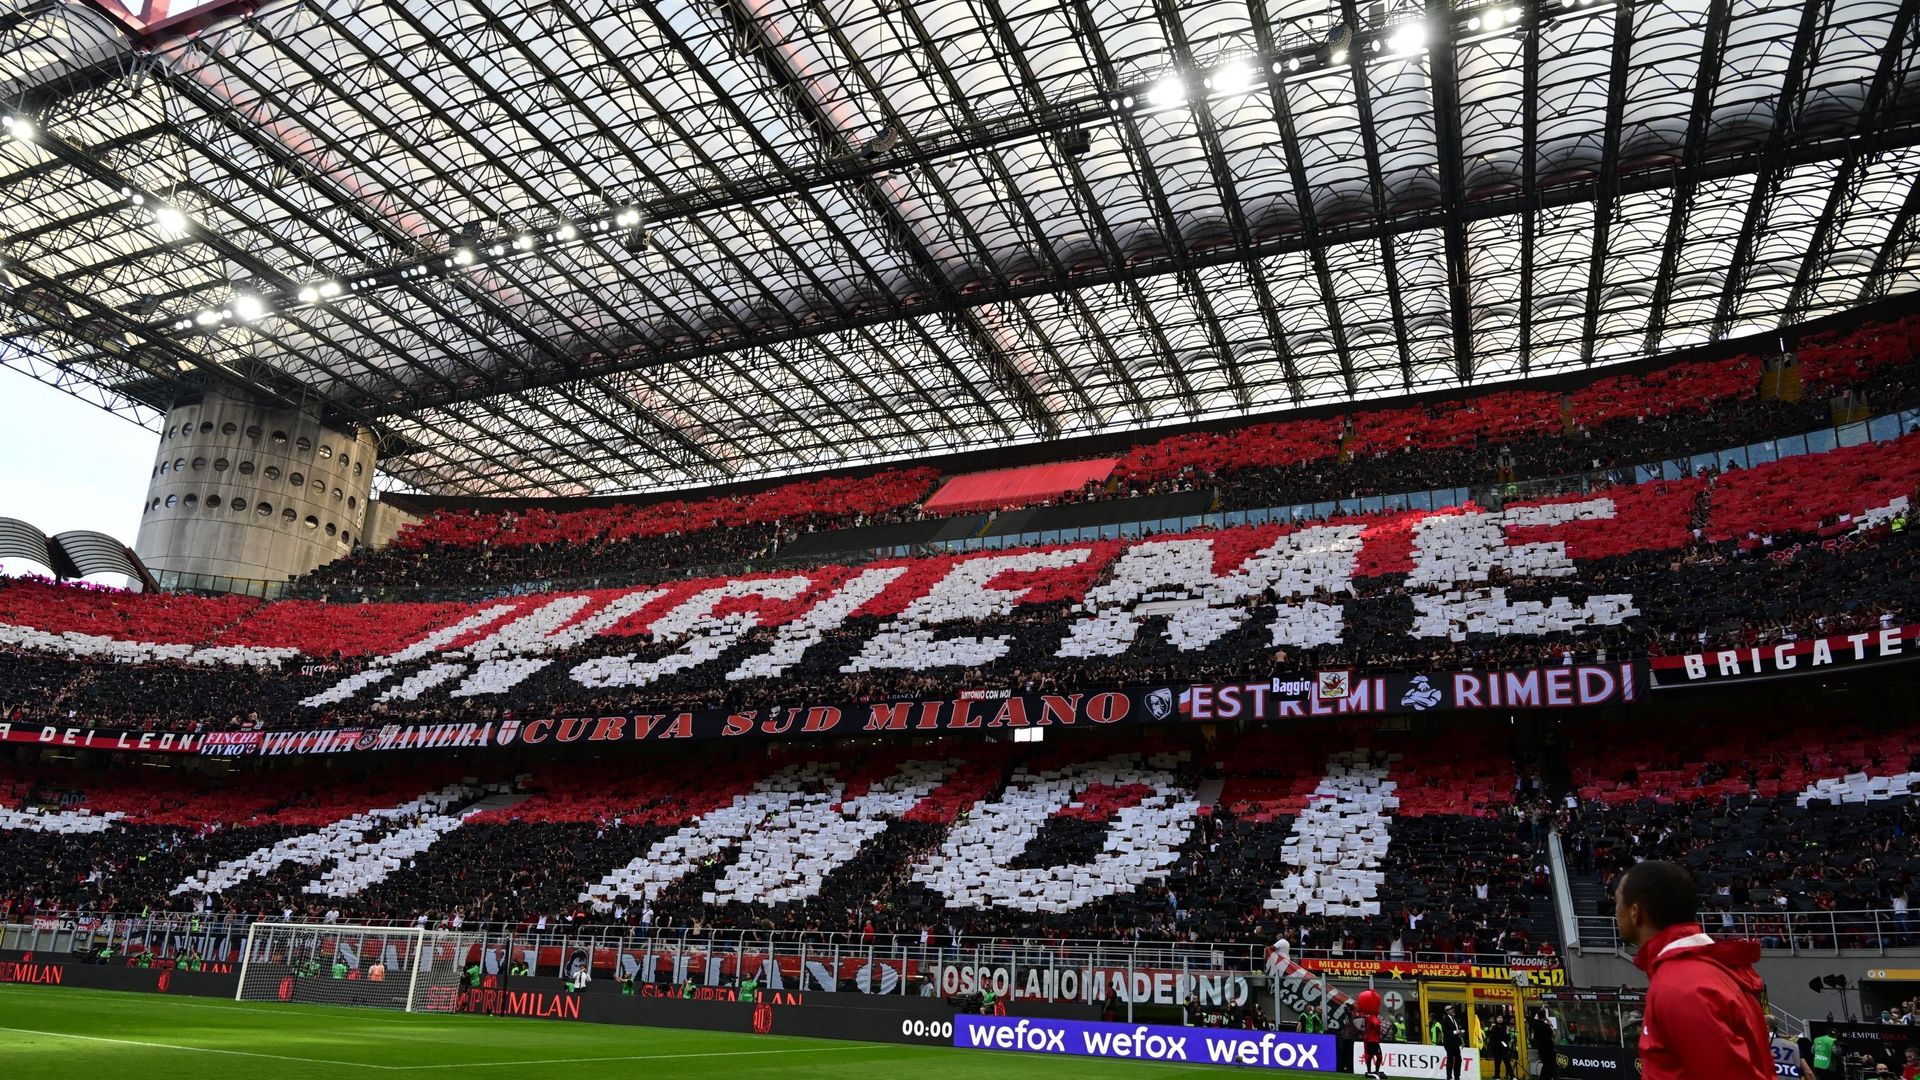 L’AC Milan est racheté par le fonds américain RedBird pour la somme d’1,2 milliard d’euros.